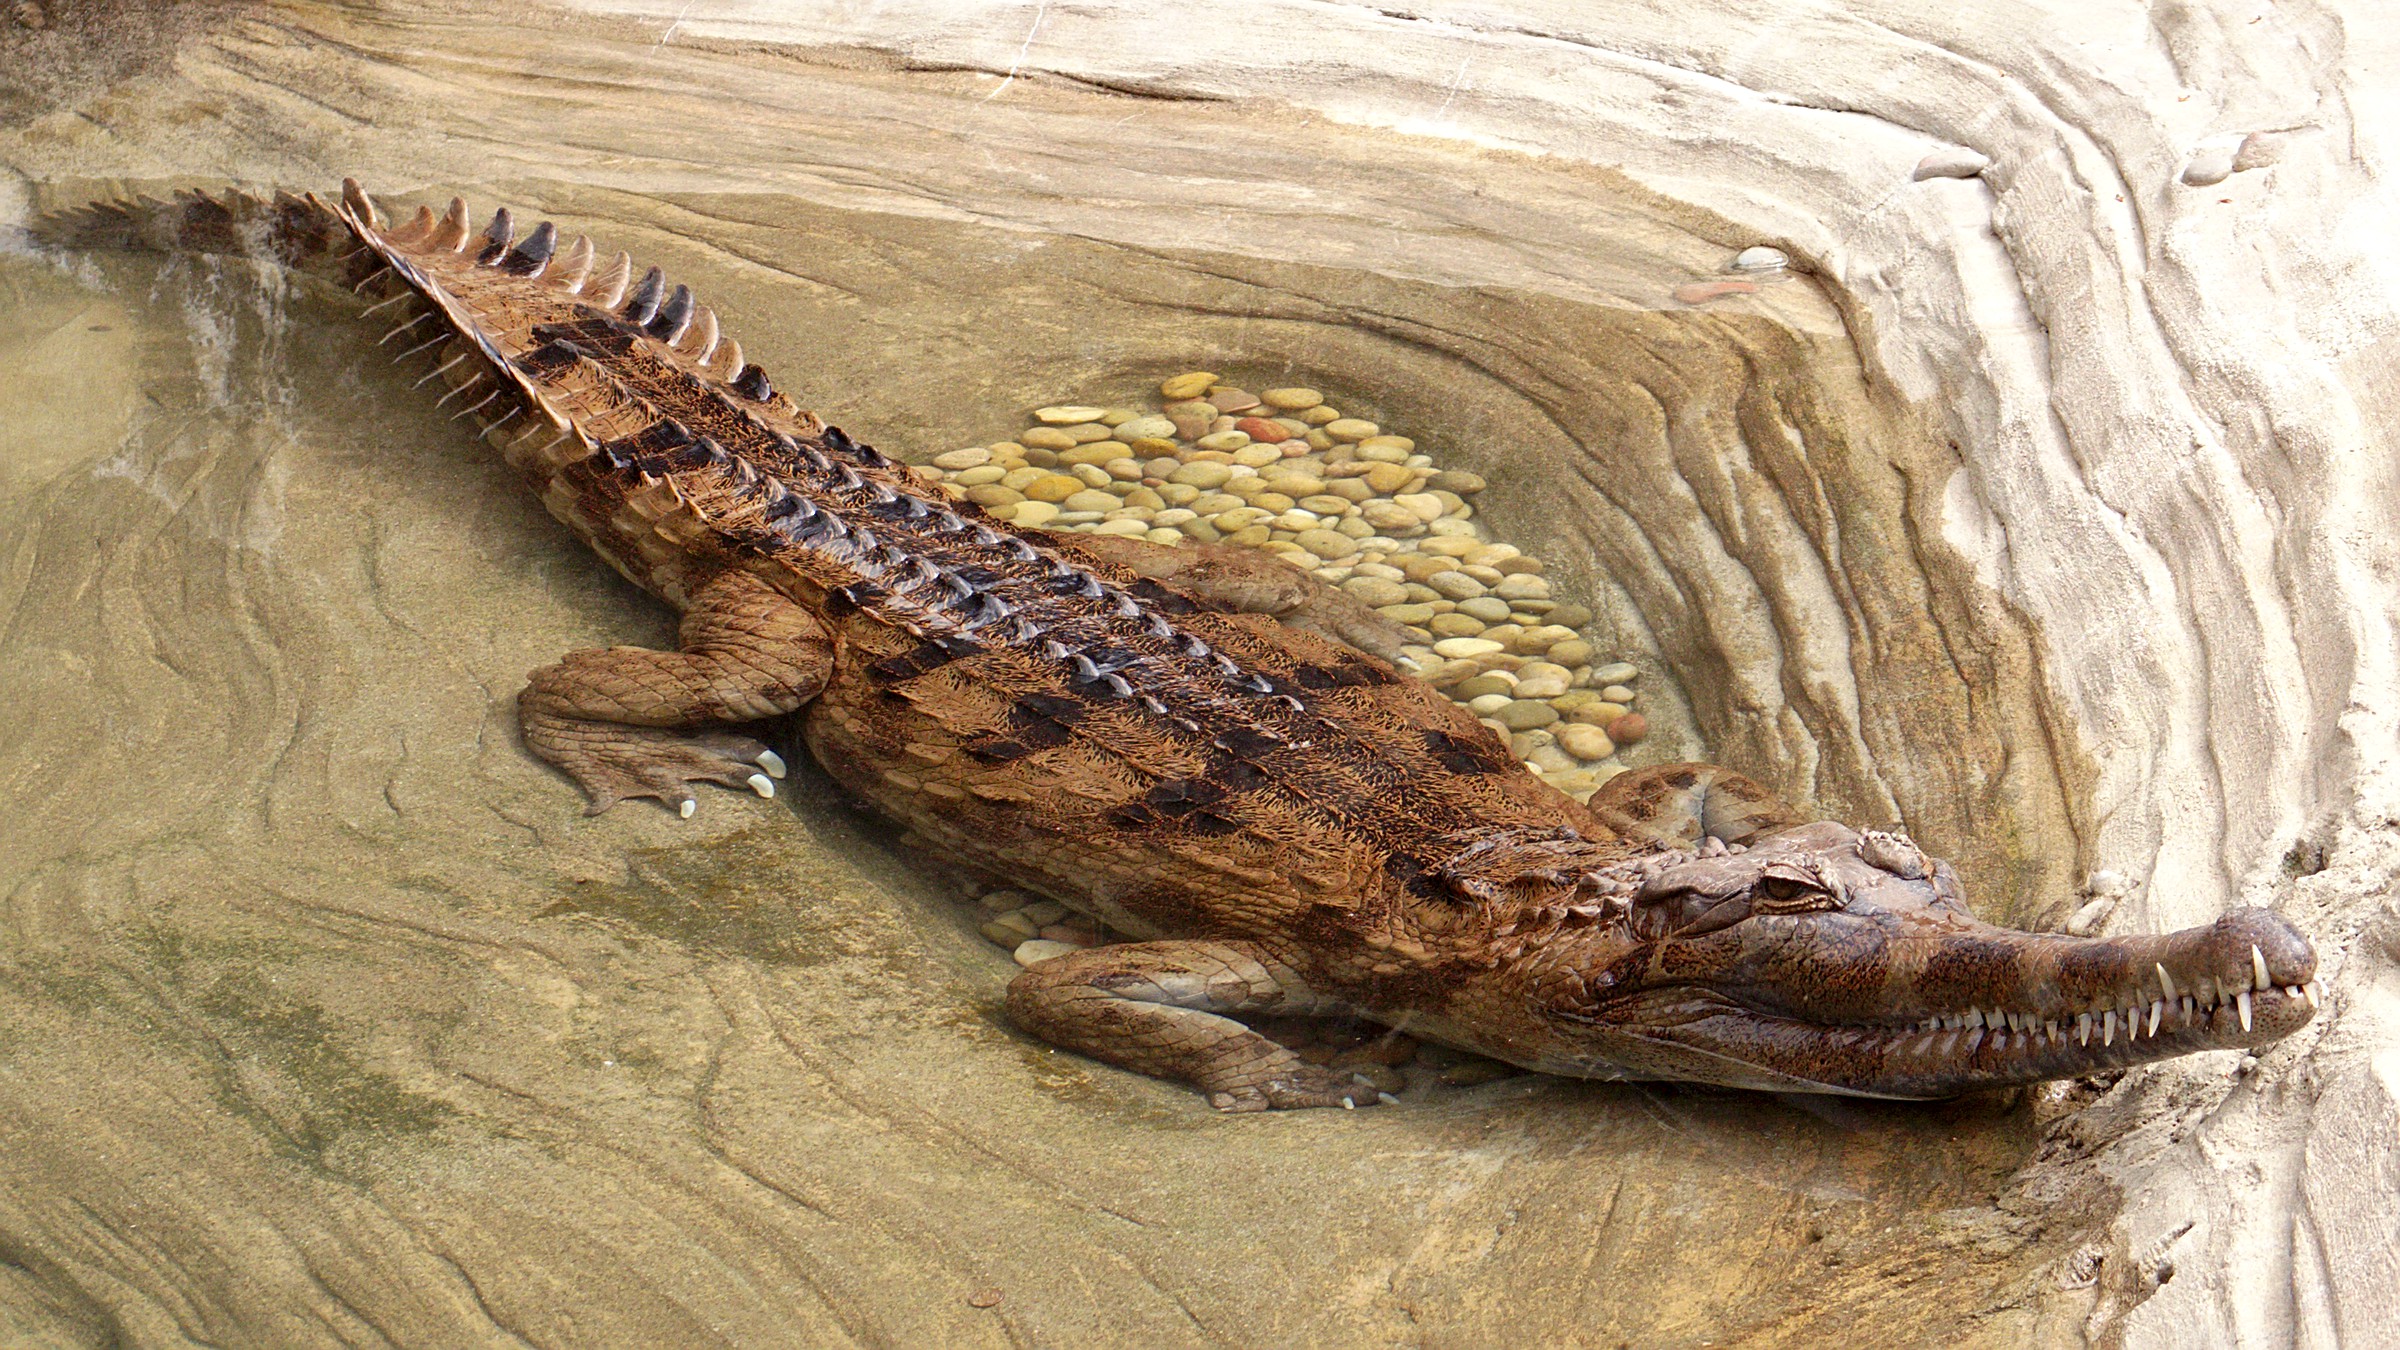 De ce se numește un tomistom fals gharial?